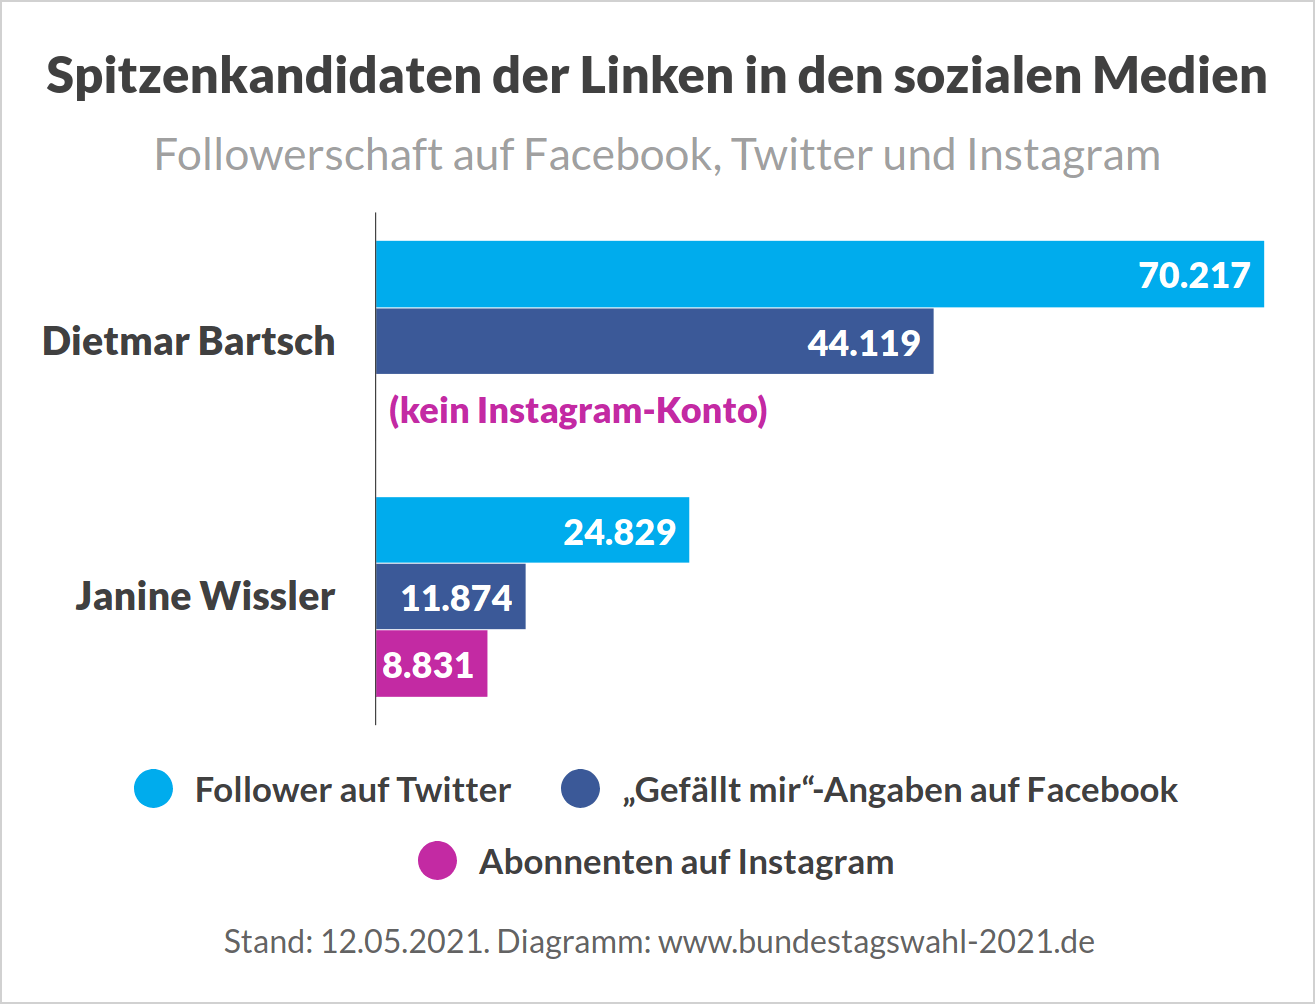 Spitzenkandidaten der Linken in den sozialen Medien (Bartsch und Wissler auf Twitter und Facebook)